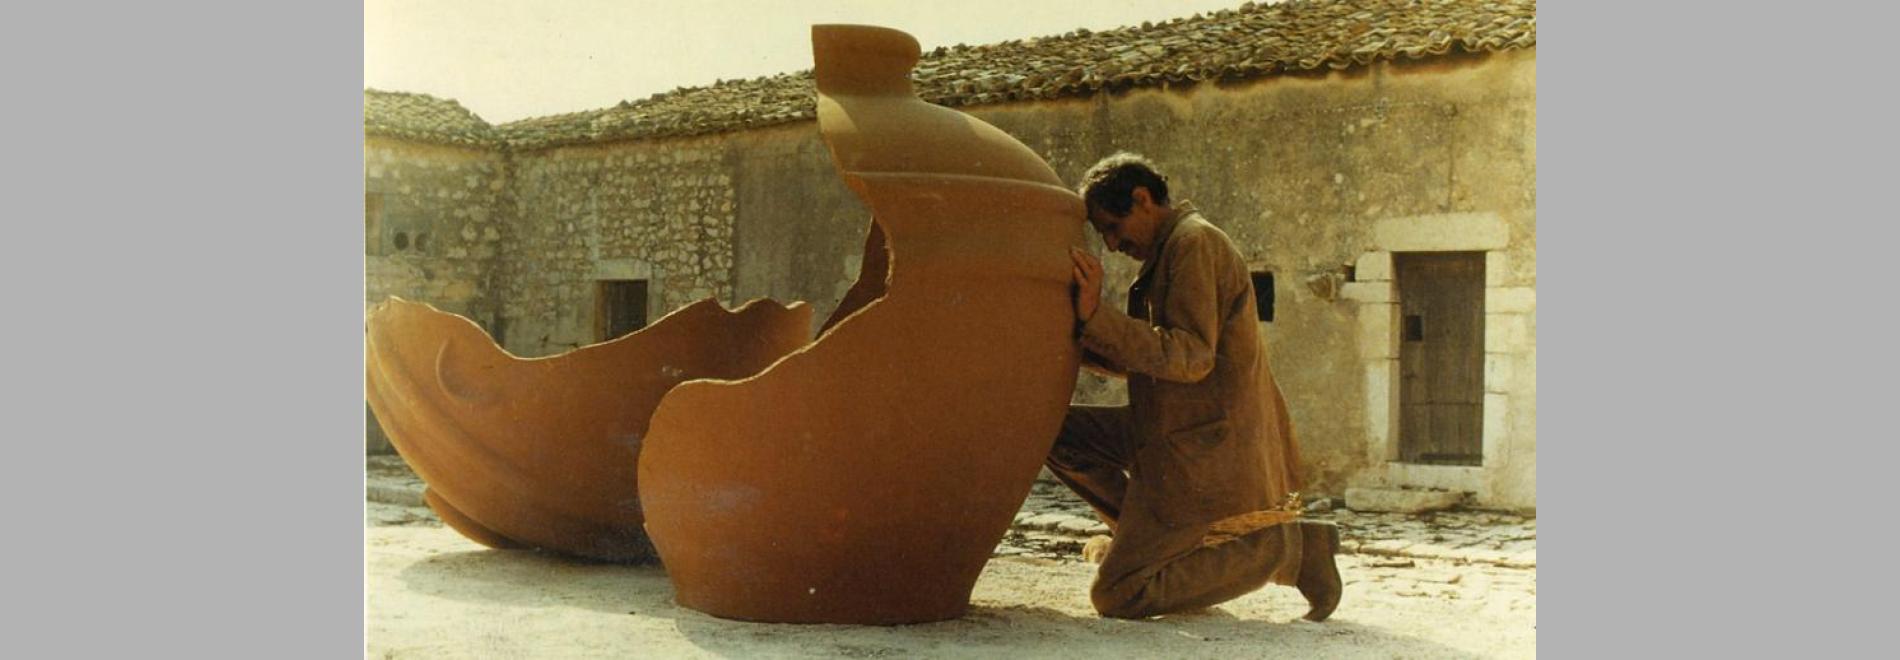 Kaos (Paolo Taviani, Vittorio Taviani, 1984)